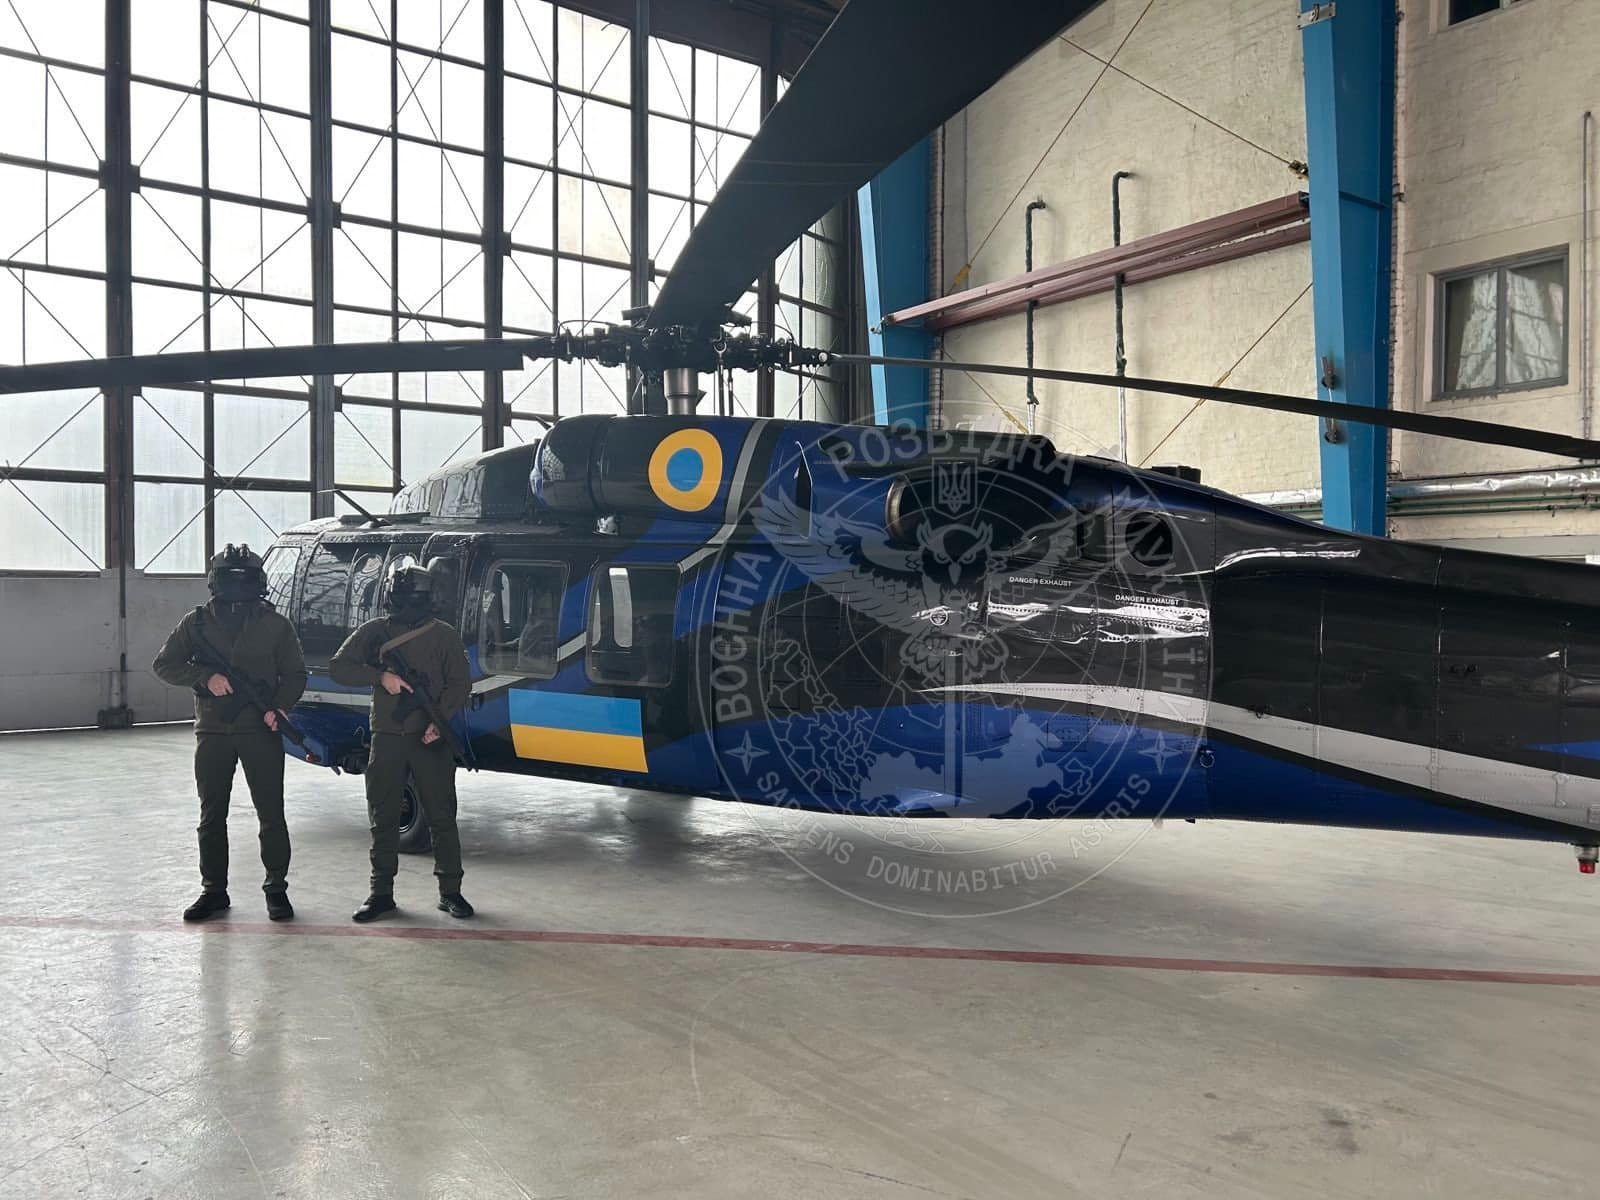 Звітуючи про бойовий вихід, бійці ГУР «мимоволі» показали свій гелікоптер UH-60 Black Hawk